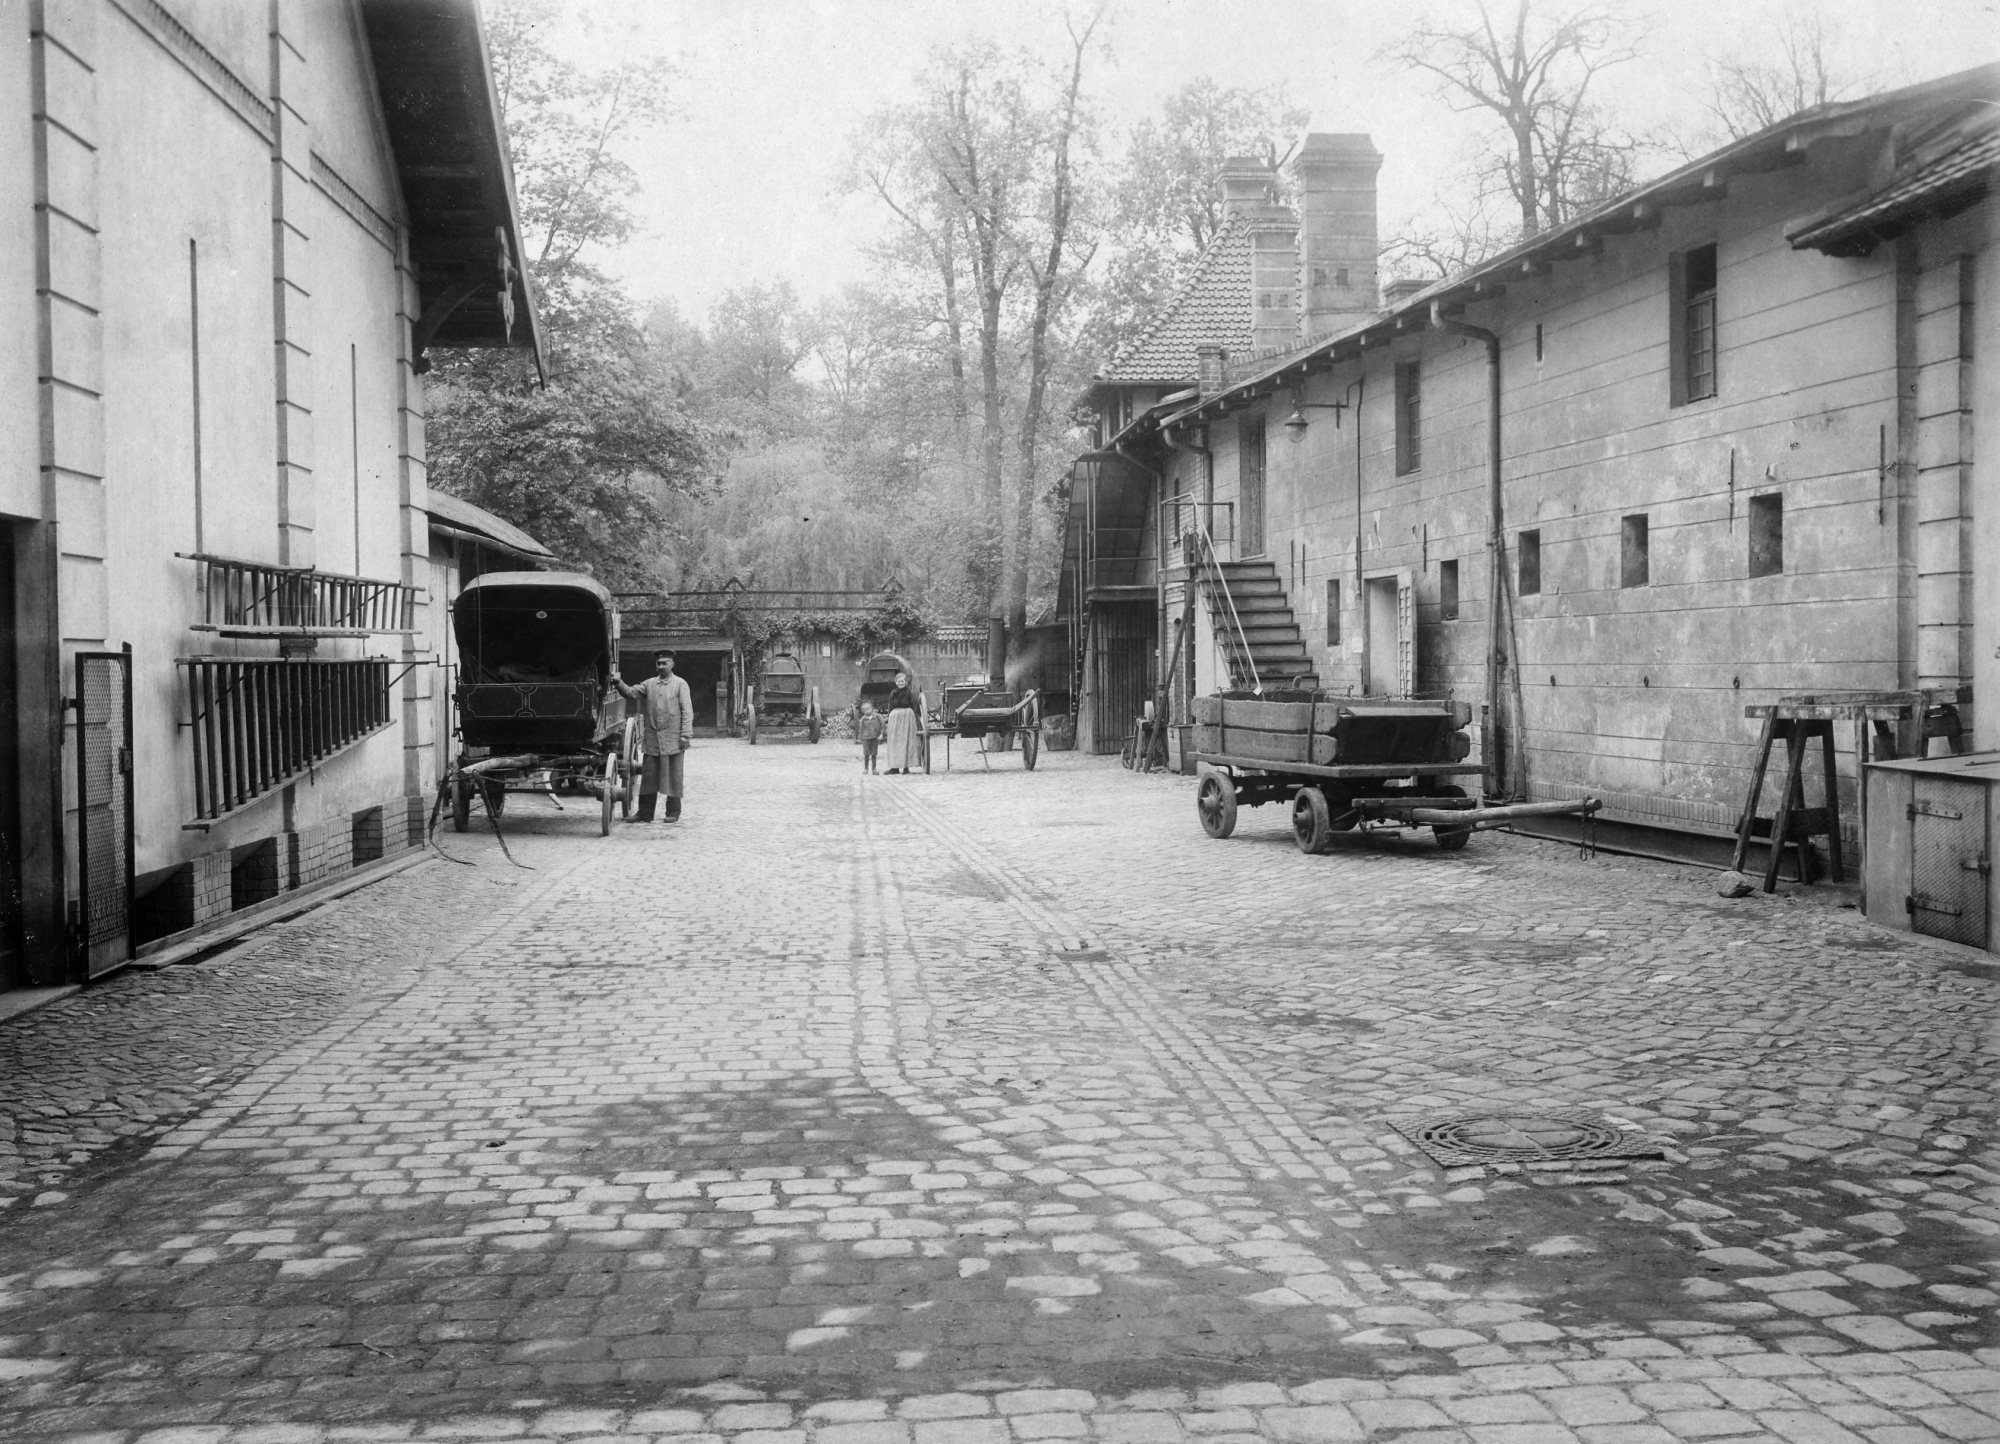 Schwarz-weiß Foto: Gepflasterter, breiter Weg, links und rechts Gebäude, im Hintergrund Bäume. Auf dem Weg steht links ein Mann neben einer Kutsche, rechts und weiter hinten stehen Karren und Arbeitsgeräte.